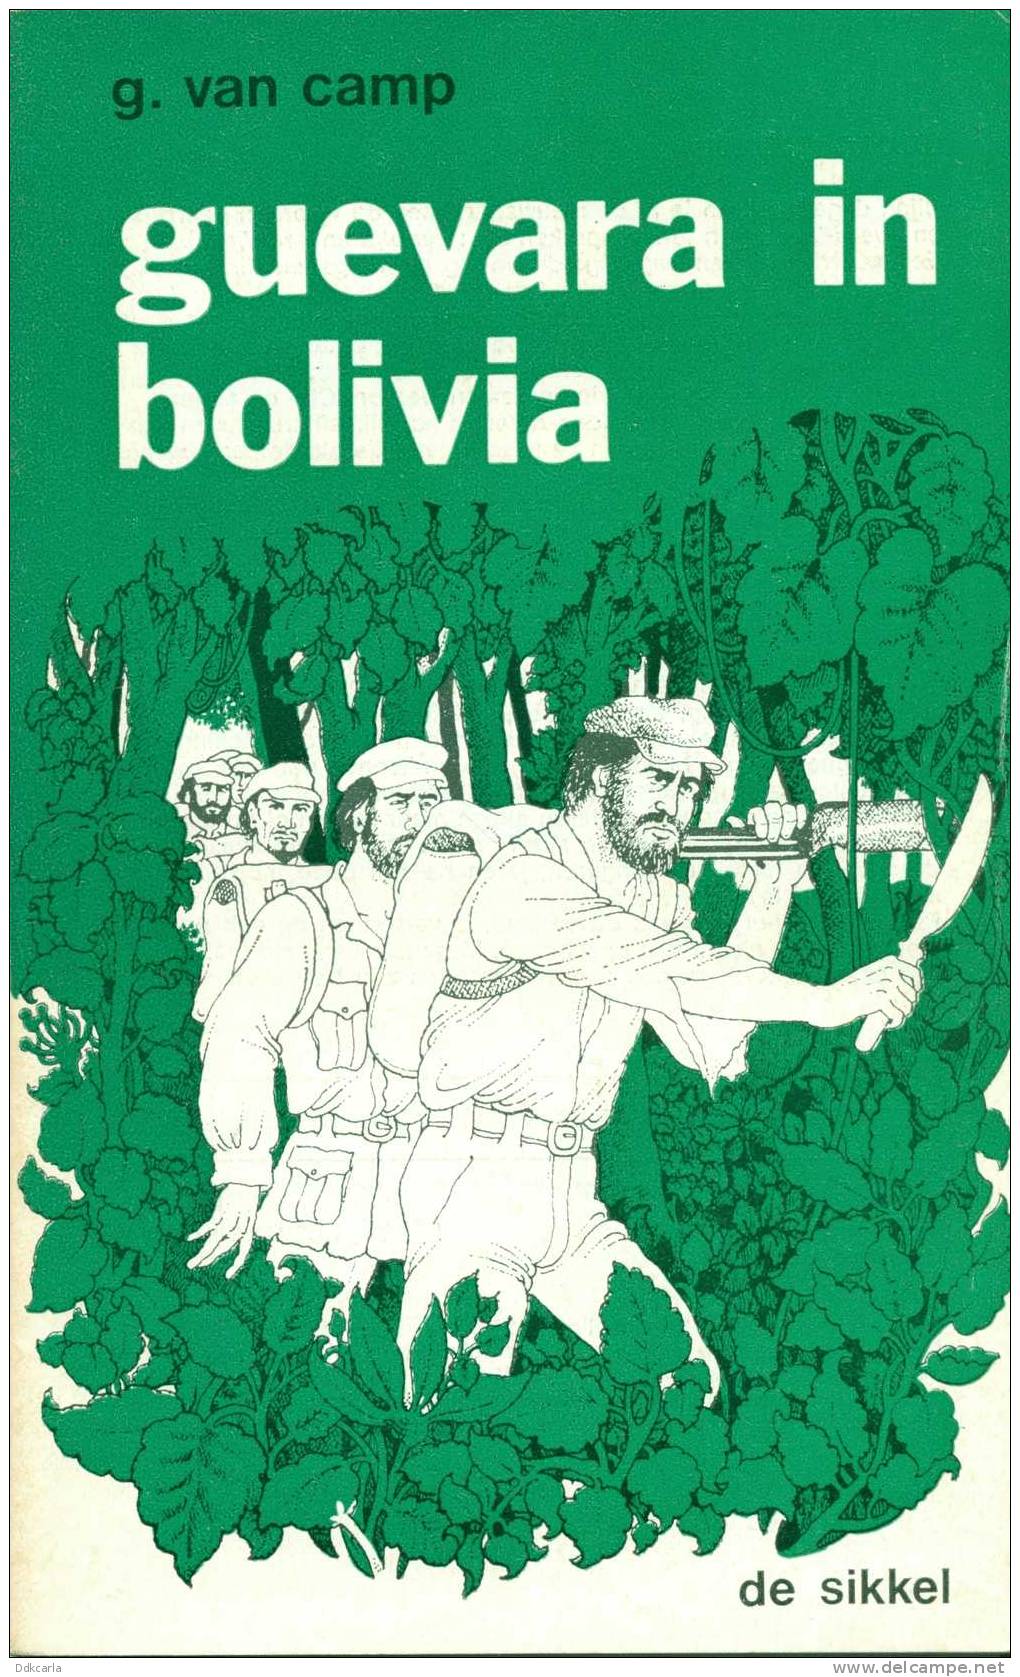 Historische Verhalen - Che Guevara In Bolivia - Guerrilla - Oorlog Van Verzetstrijders - Vriend Van Fidel Castro - History